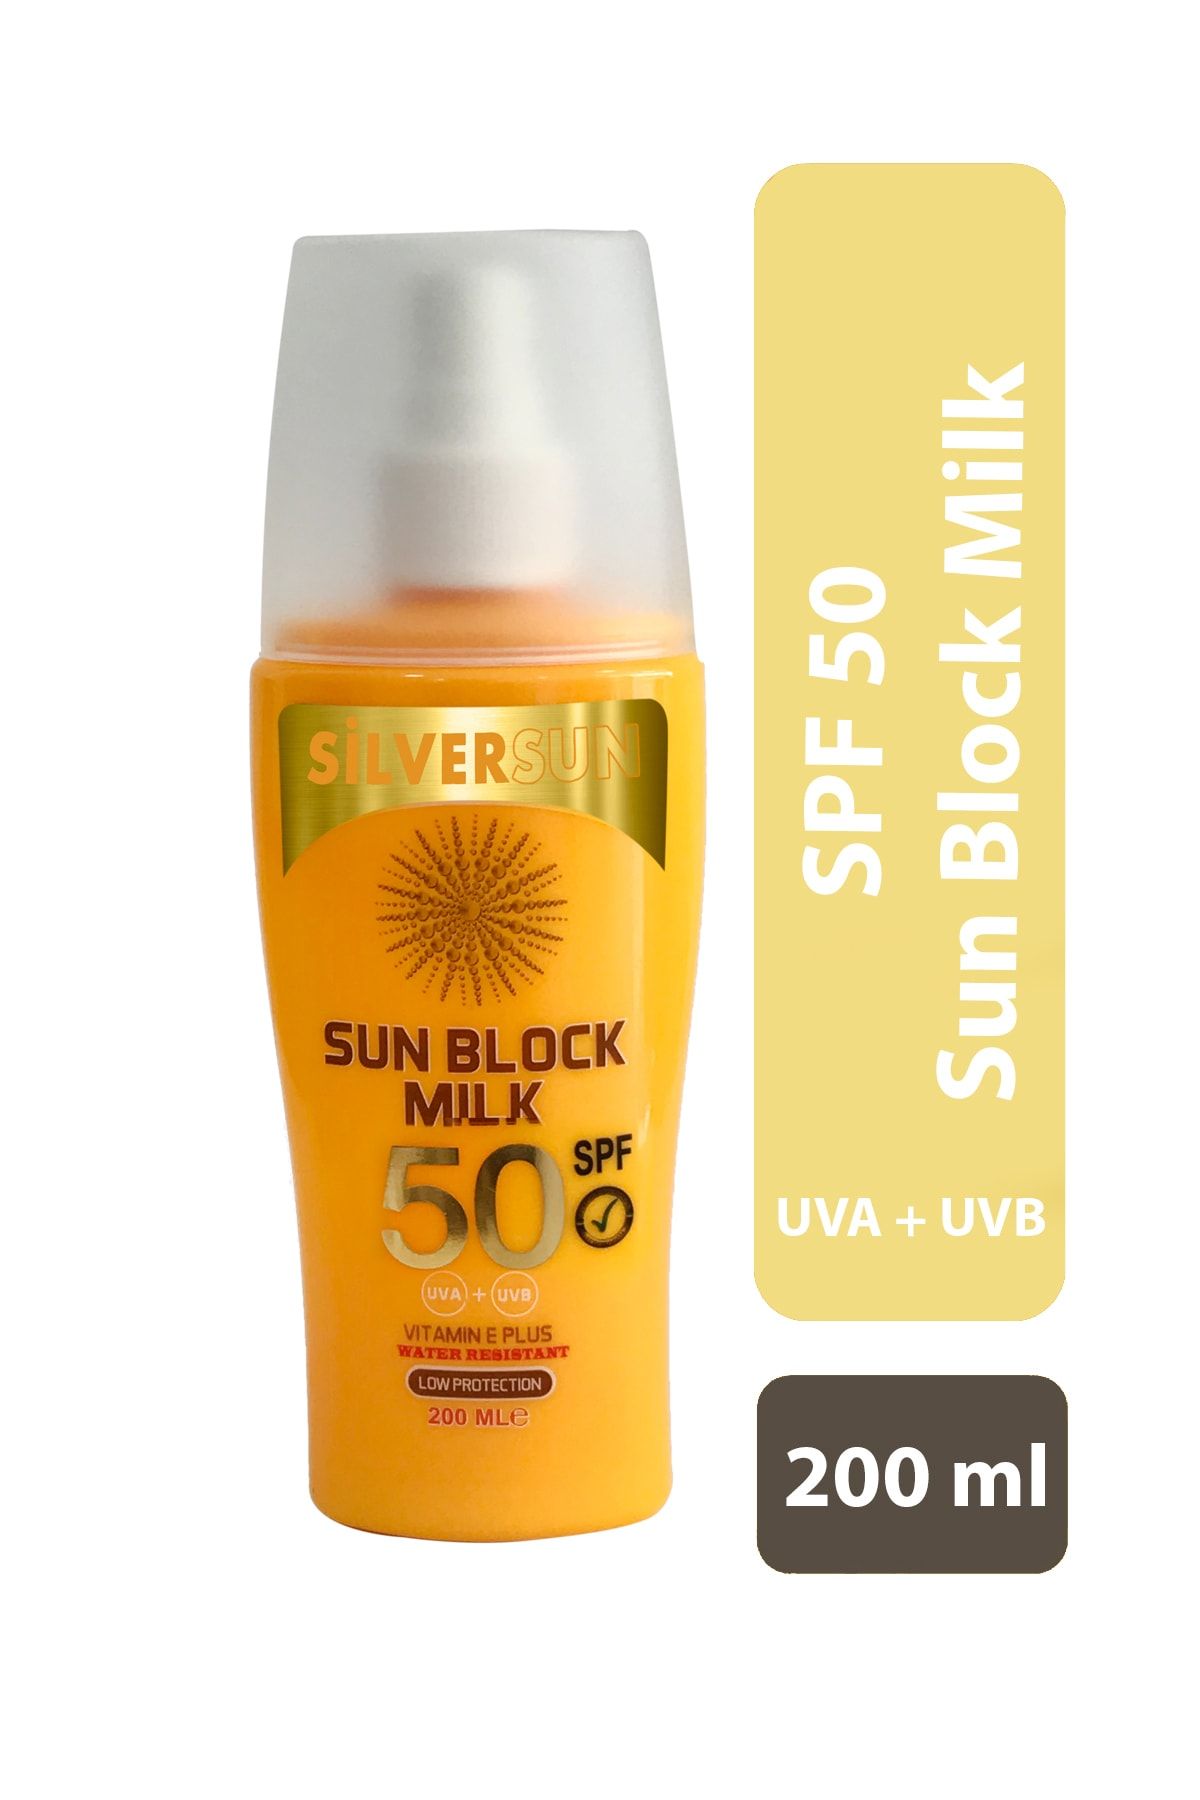 Silversun Sun Block Milk Spf 50 Uva+uvb Vitamin E Plus 200 ml